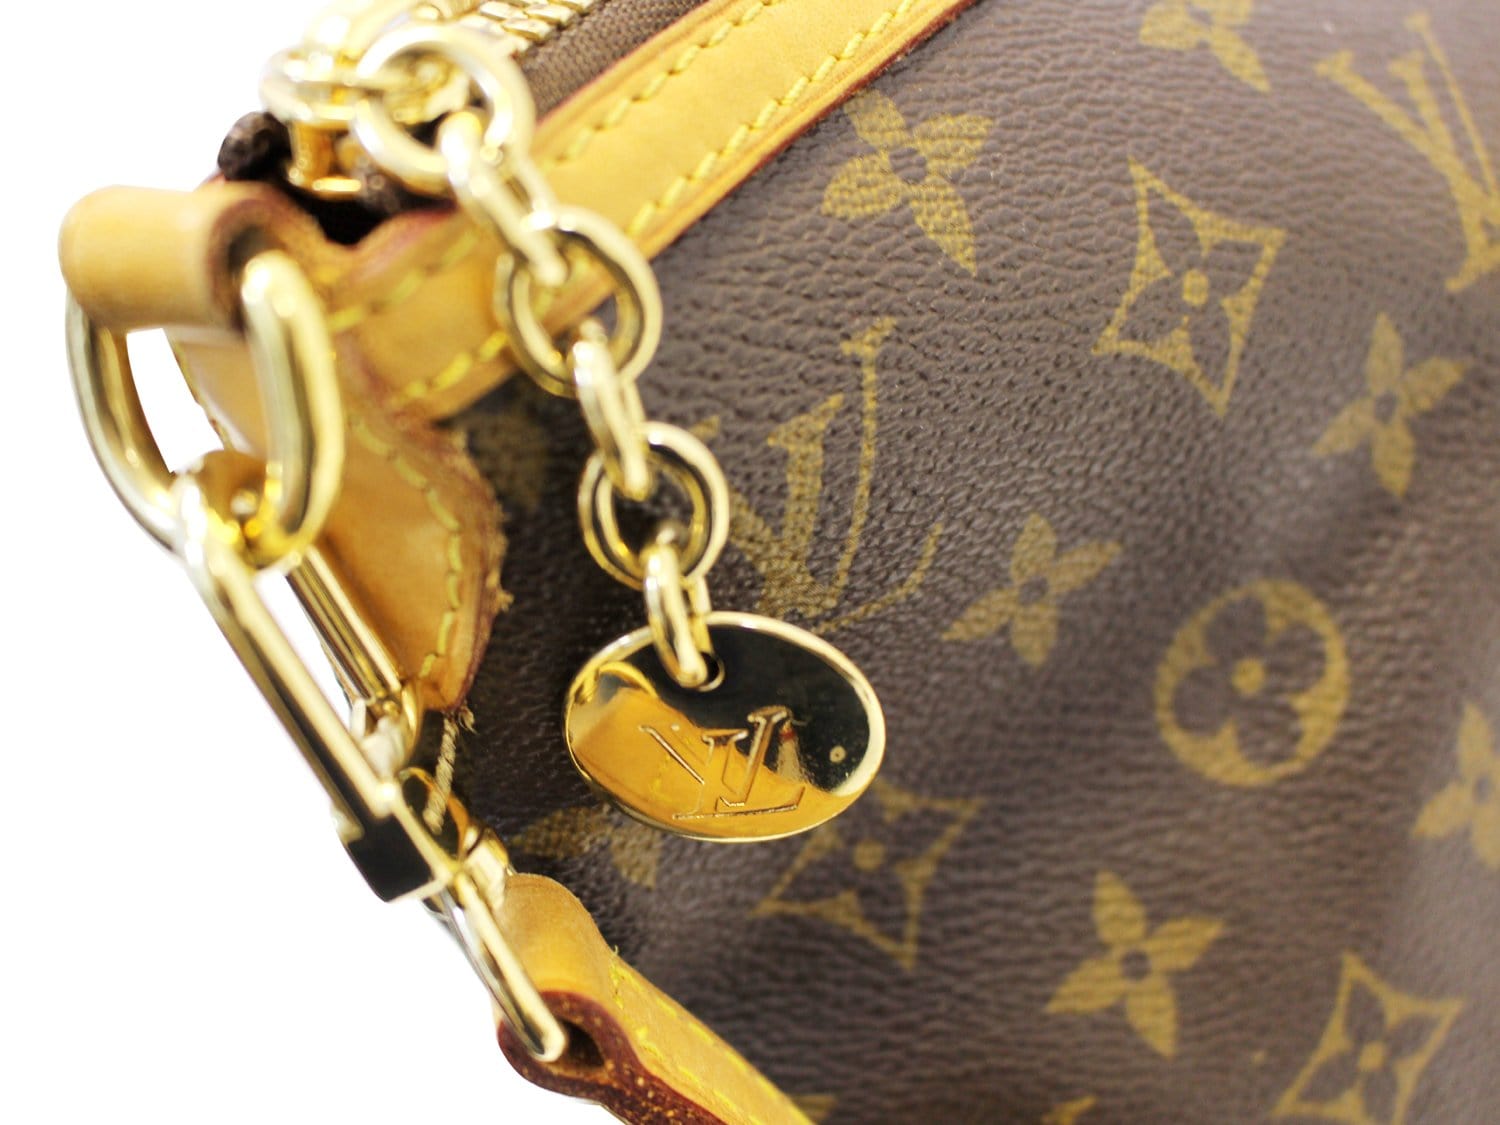 Vint LOUIS VUITTON Palermo GM Monogram Tote Shoulder Bag, Luggage, 2wa –  Antiques & Uncommon Treasure